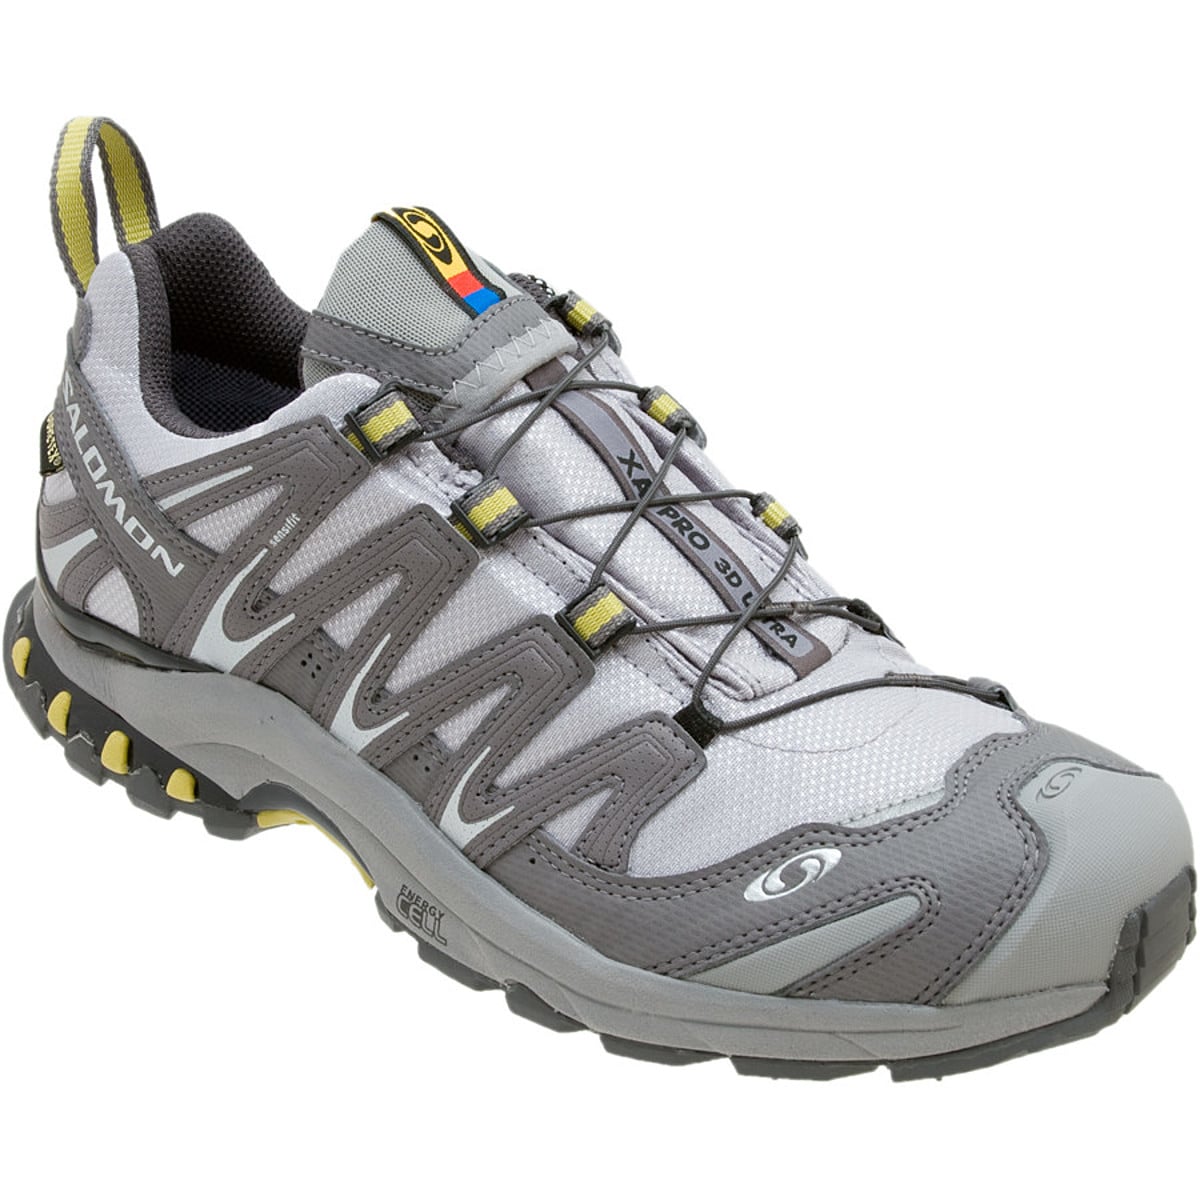 Voorstad Ontwijken Helemaal droog Salomon XA Pro 3D Ultra GTX Trail Running Shoe - Women's - Footwear